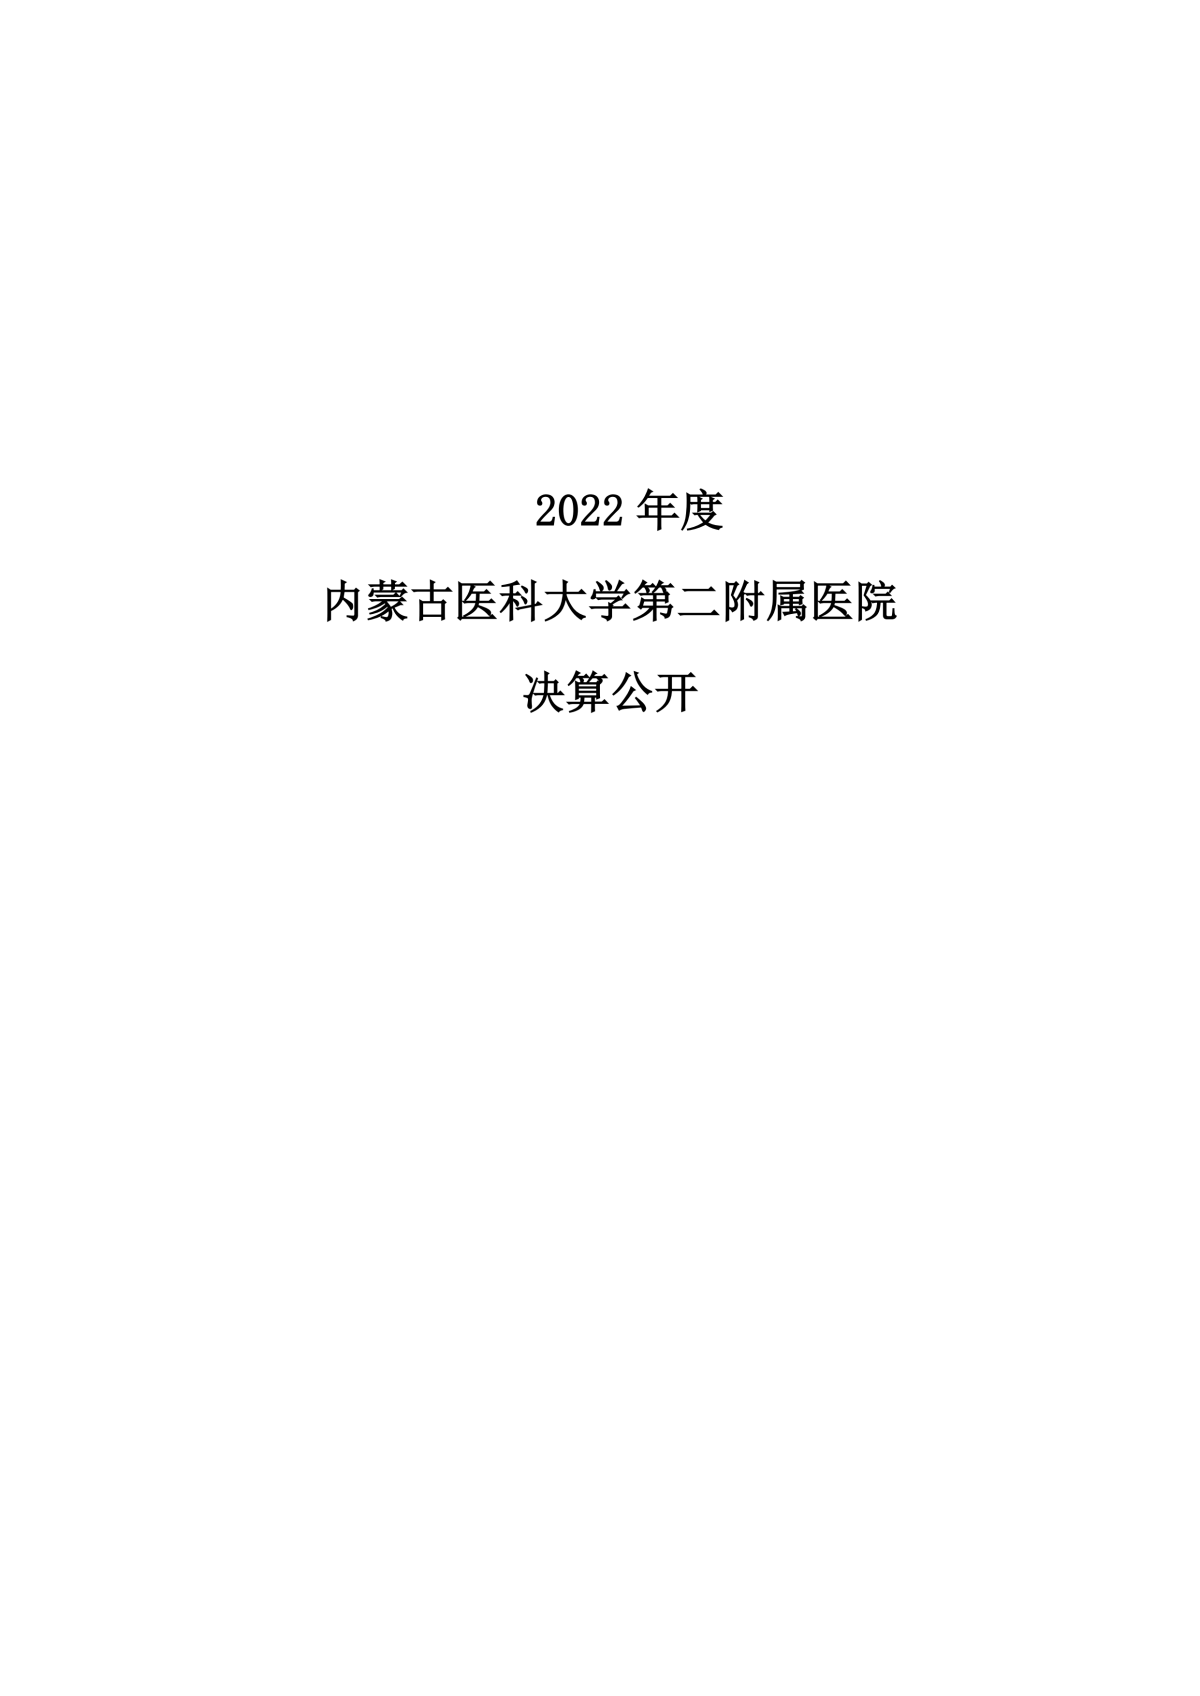 2022年度必威公开报告_00.png